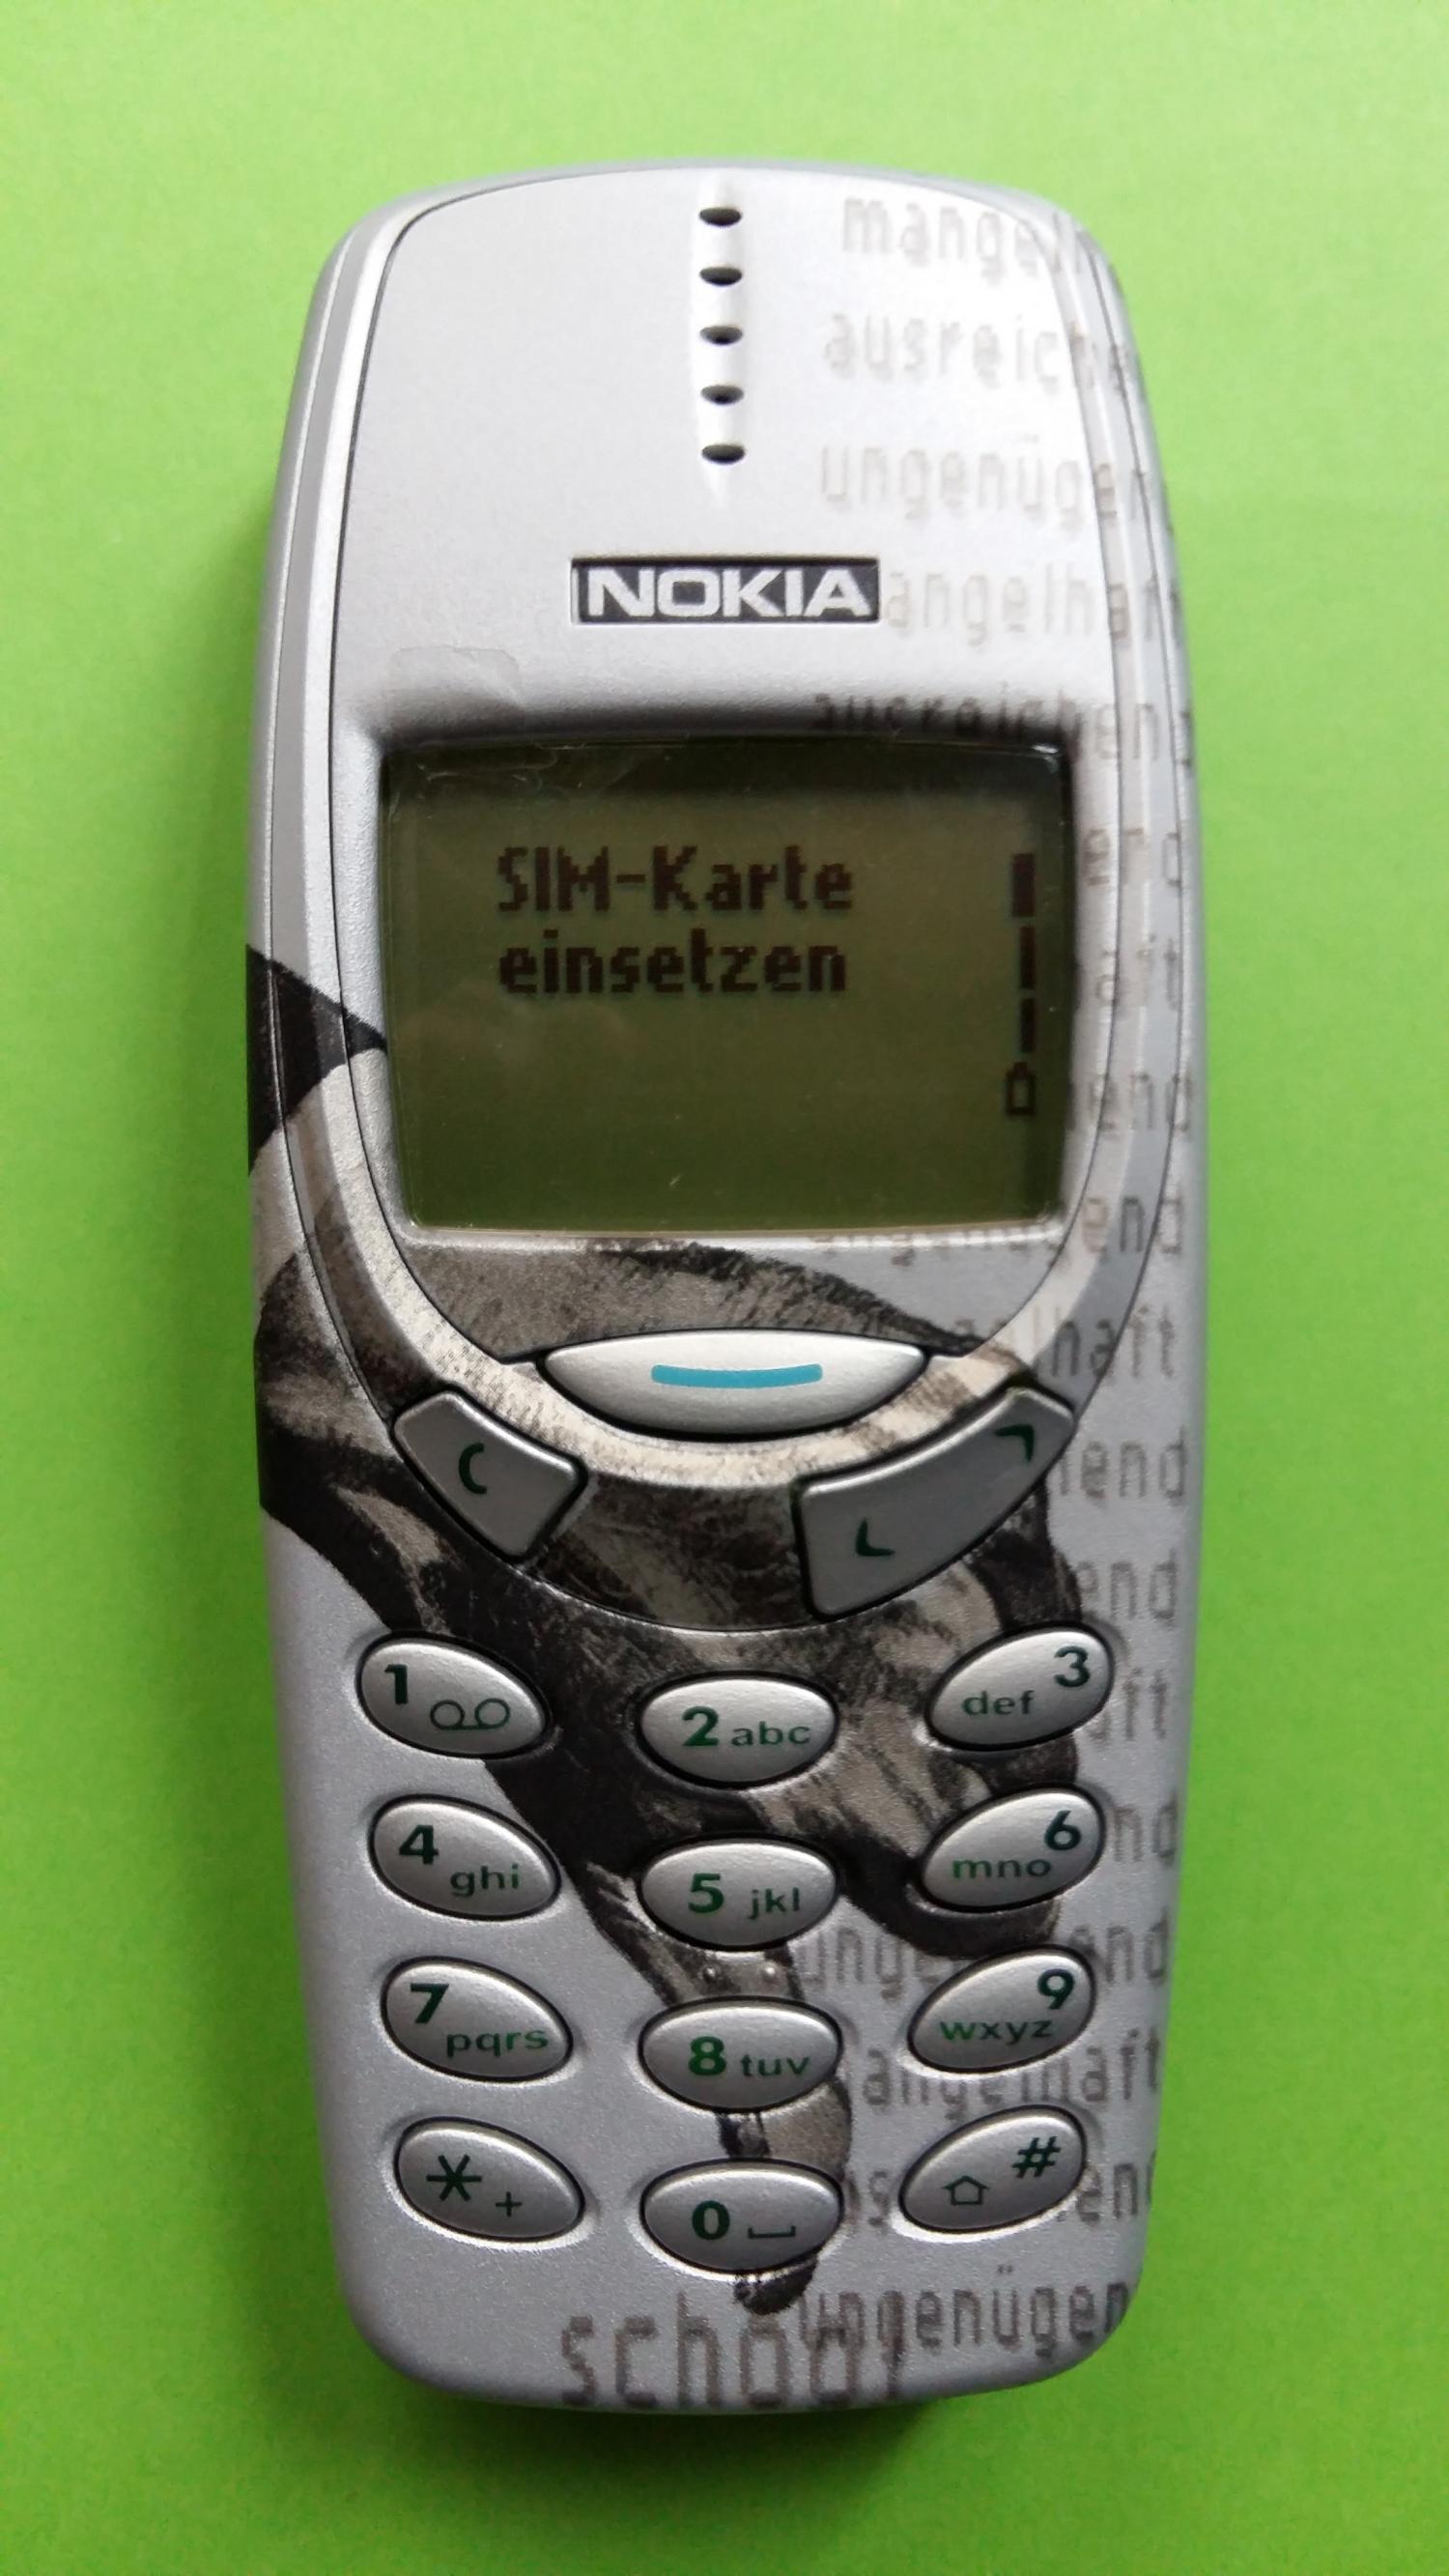 image-7306827-Nokia 3310 (4)1.jpg